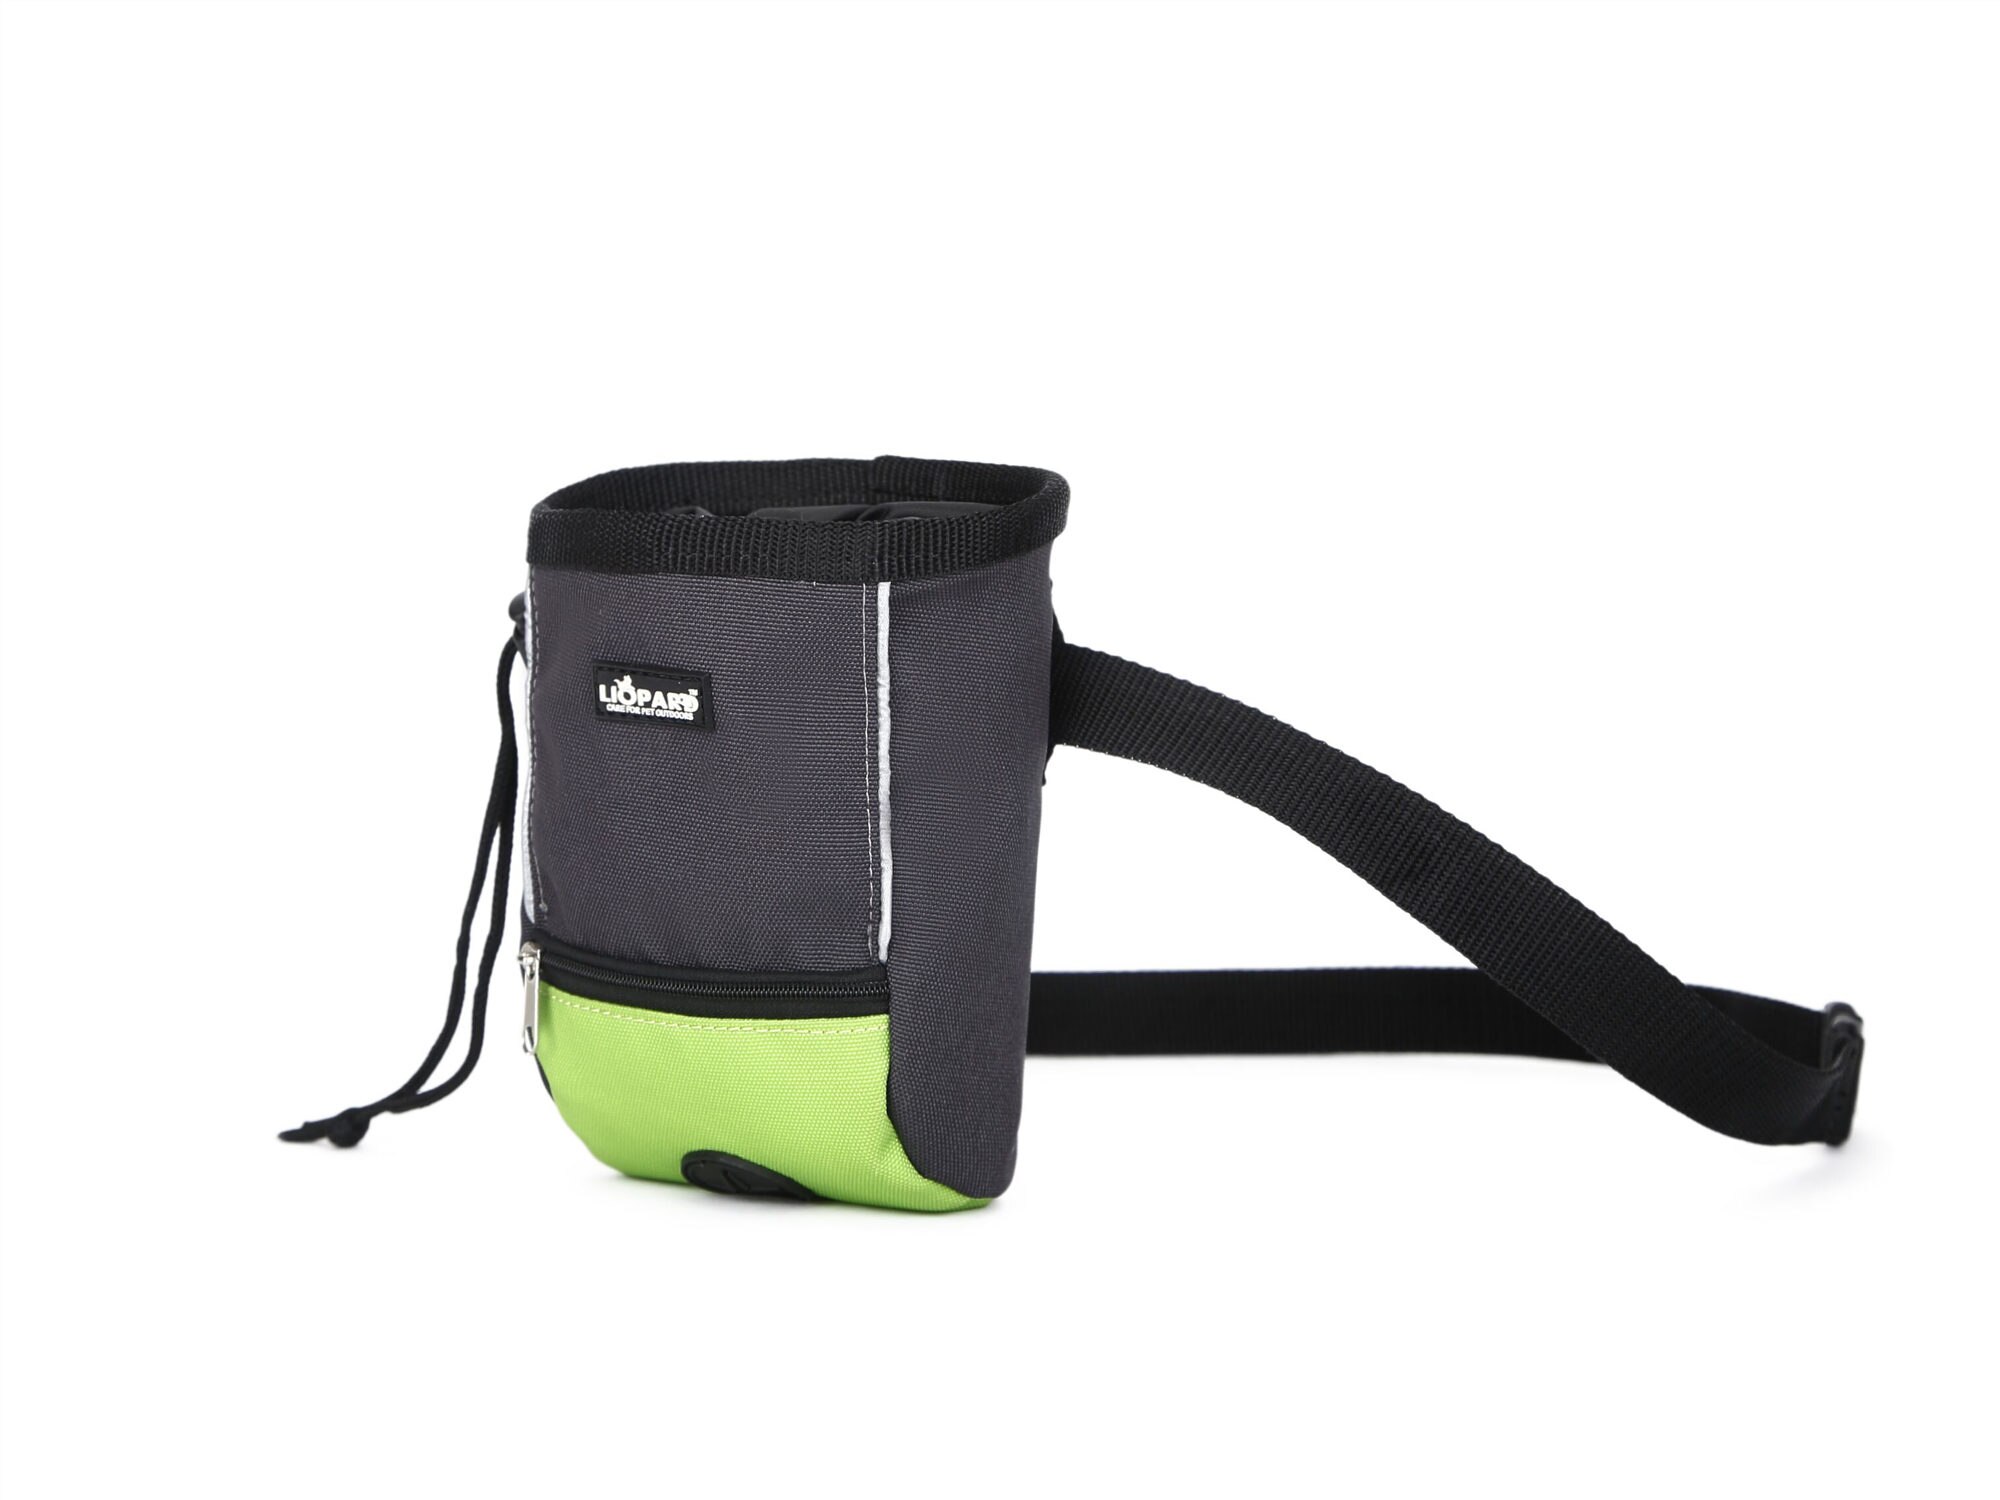 Sac à friandises pour chiens de grande capacité | Petite pochette Portable détachable pour chiens de formation, sac à friandises pour chiens de compagnie: Green